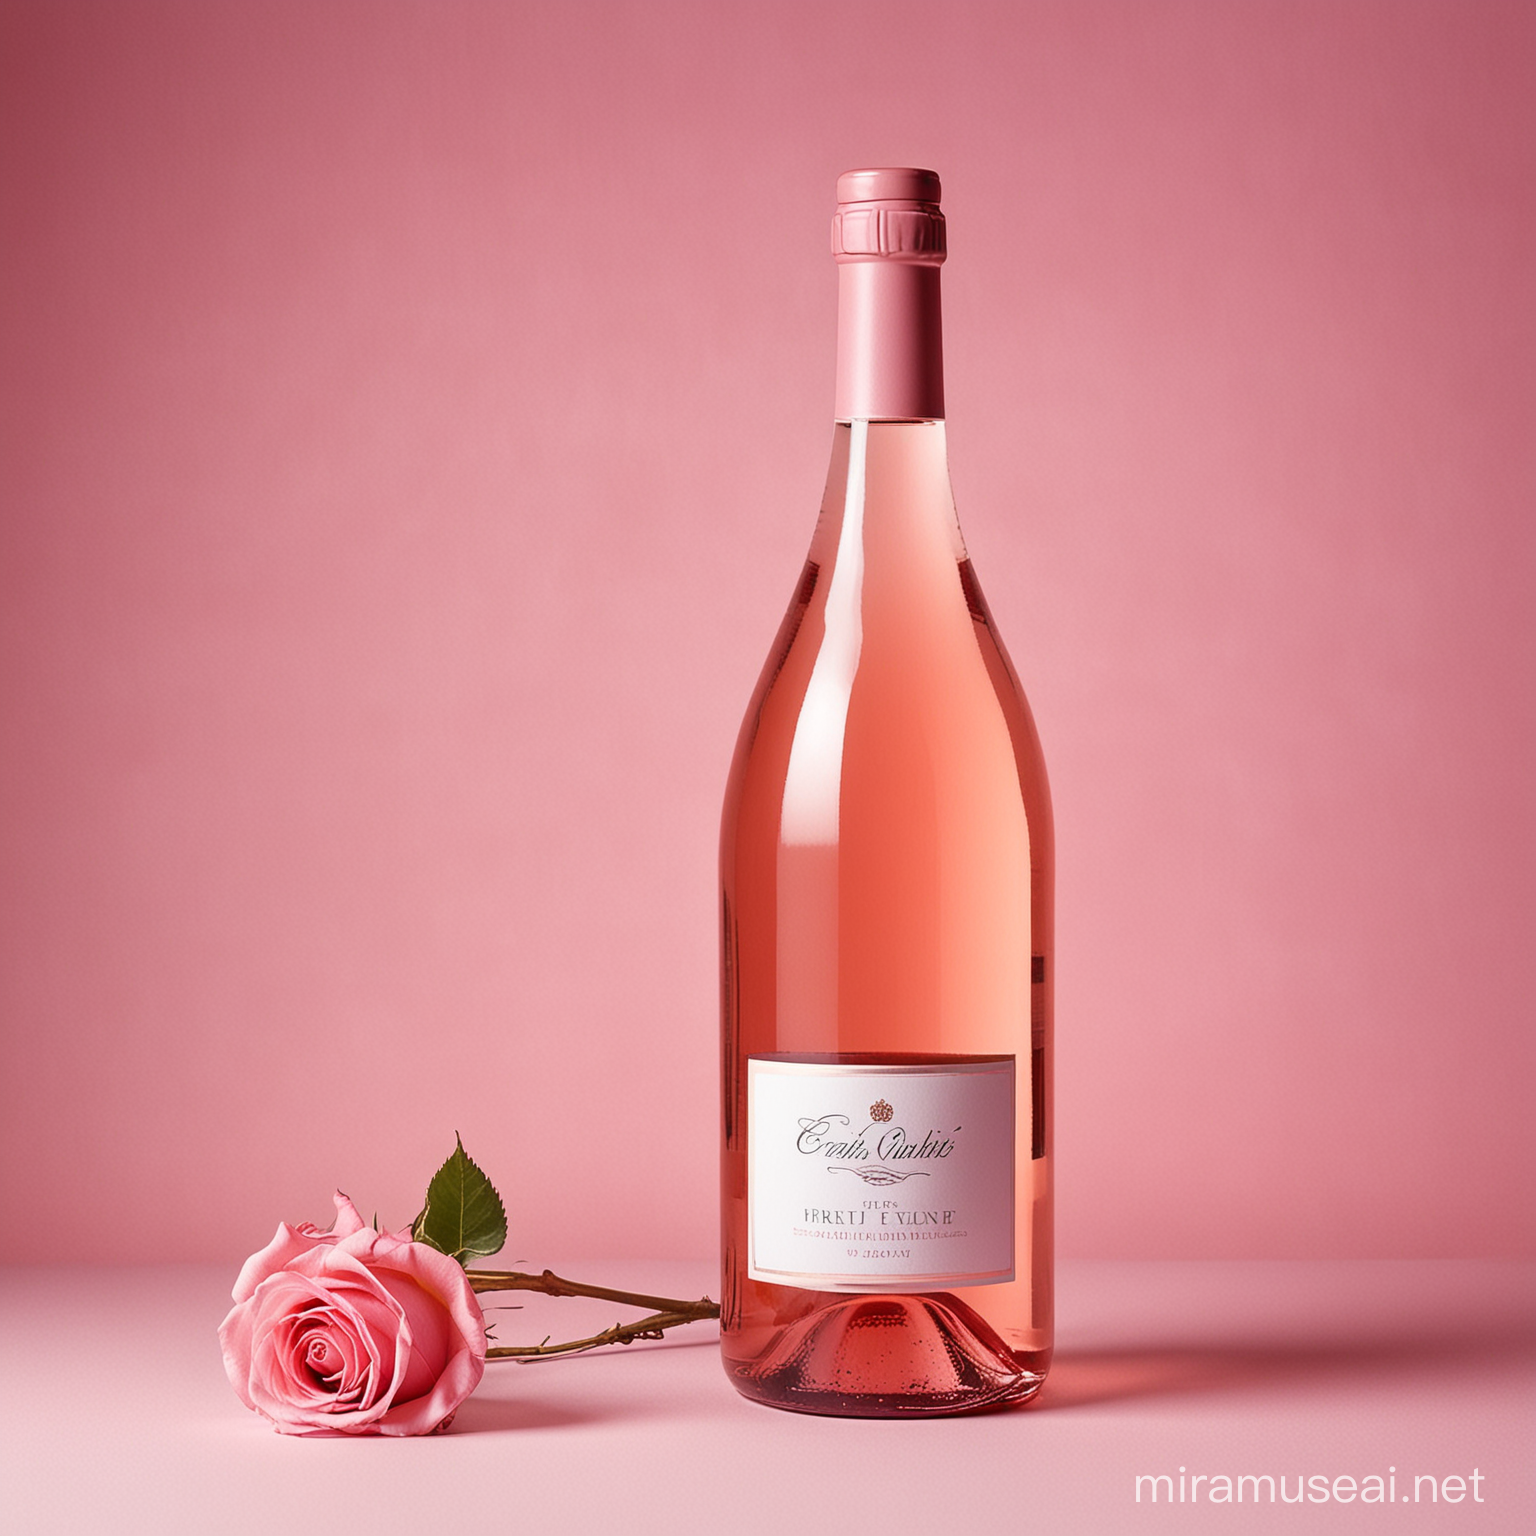 Elegant Rose Wine Bottle on Delicate Pink Background